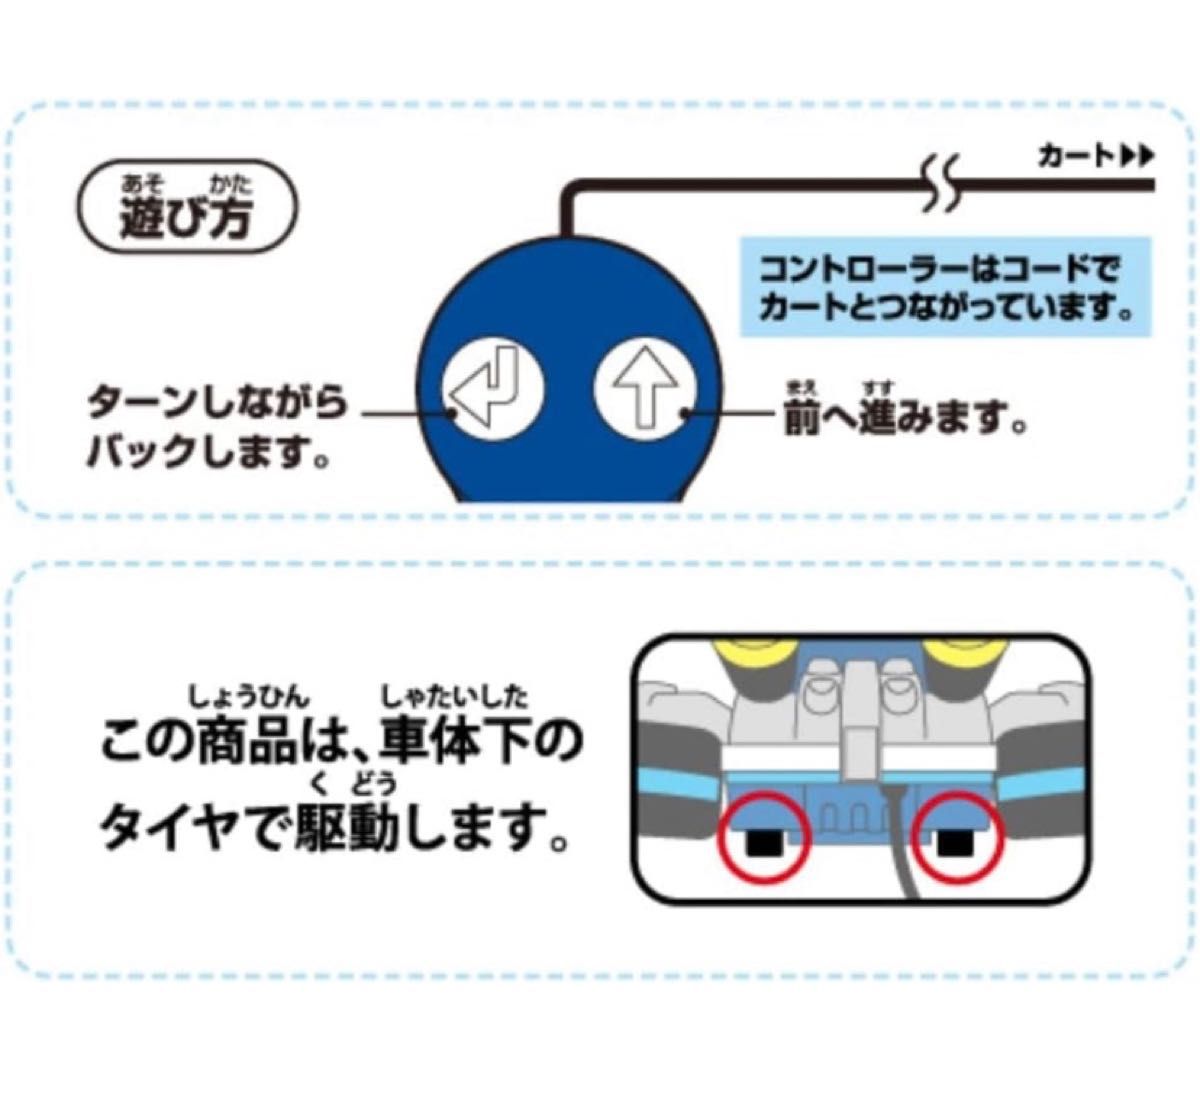 ムラオカ(Muraoka) リモートコントロールカー マリオカート(マリオ) 